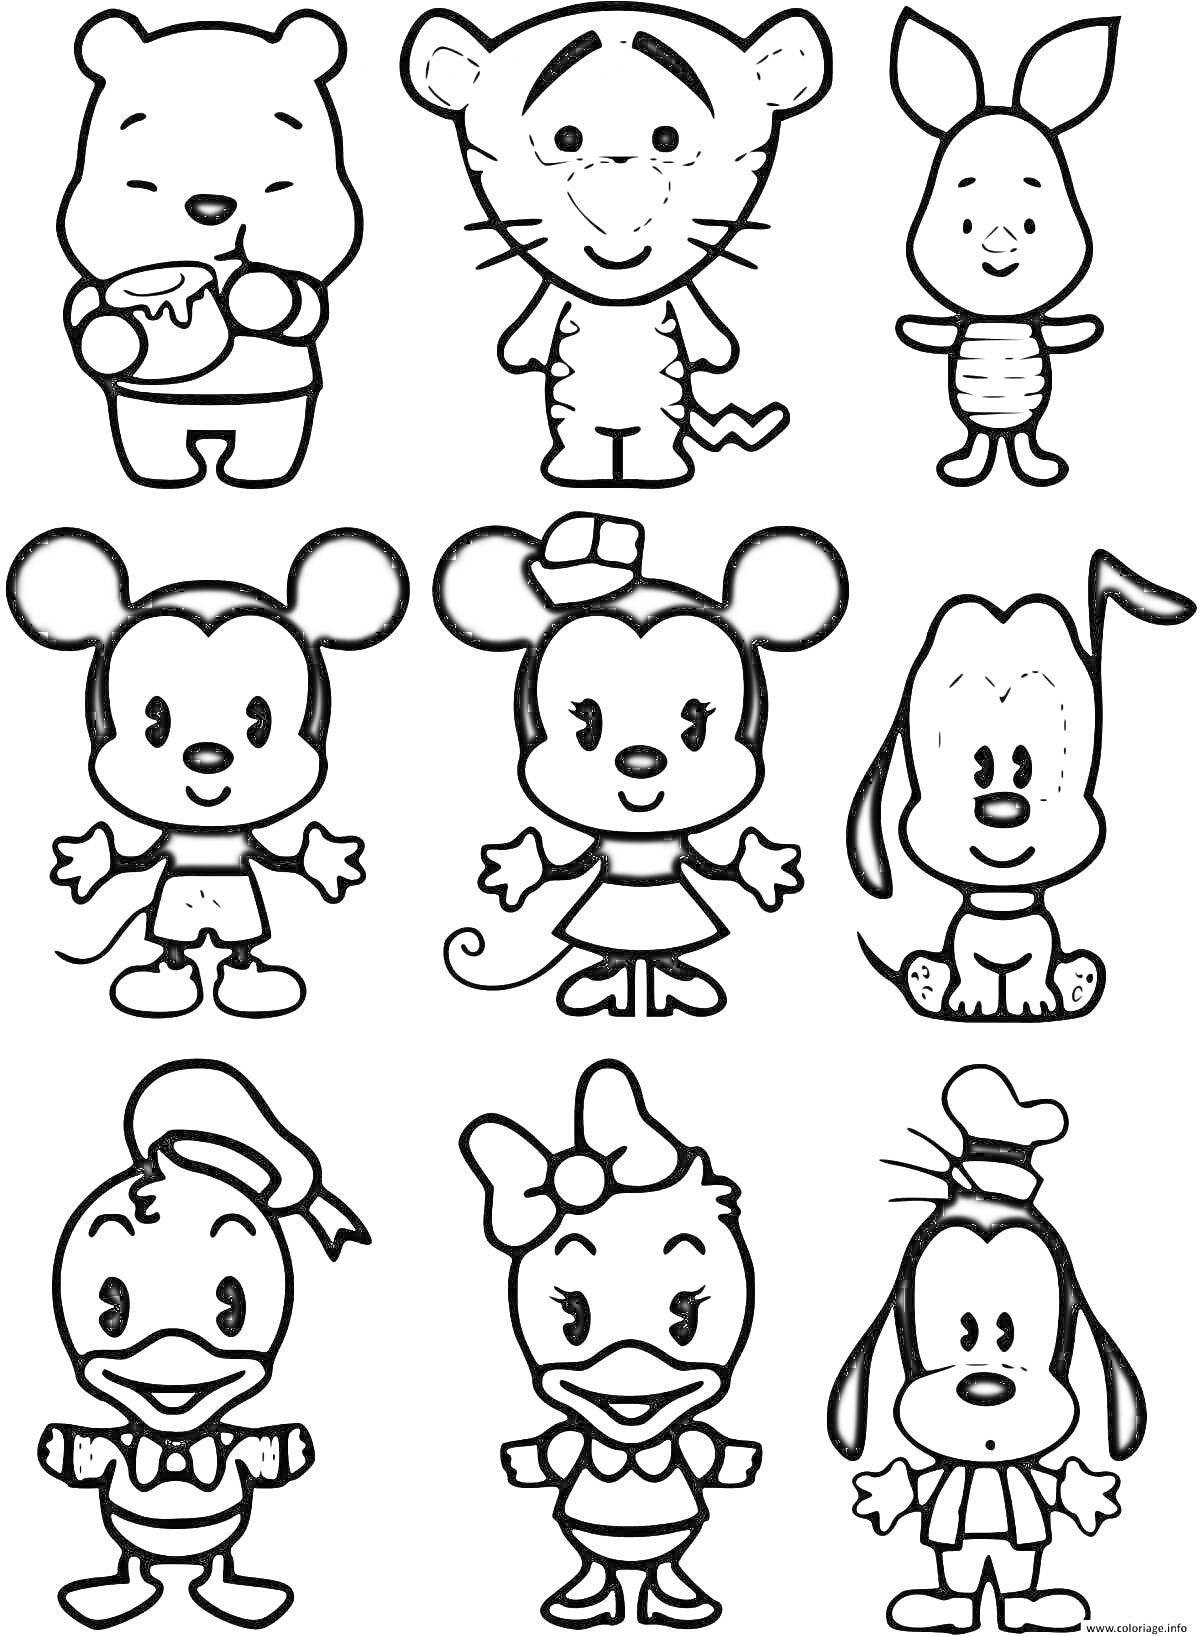 Мини персонажи для наклеек - Мишка с вазой меда, Тигр, Кролик, Мышонок мальчик, Мышонок девочка, Собака, Утенок мальчик, Утенок девочка, Собака с длинными ушами